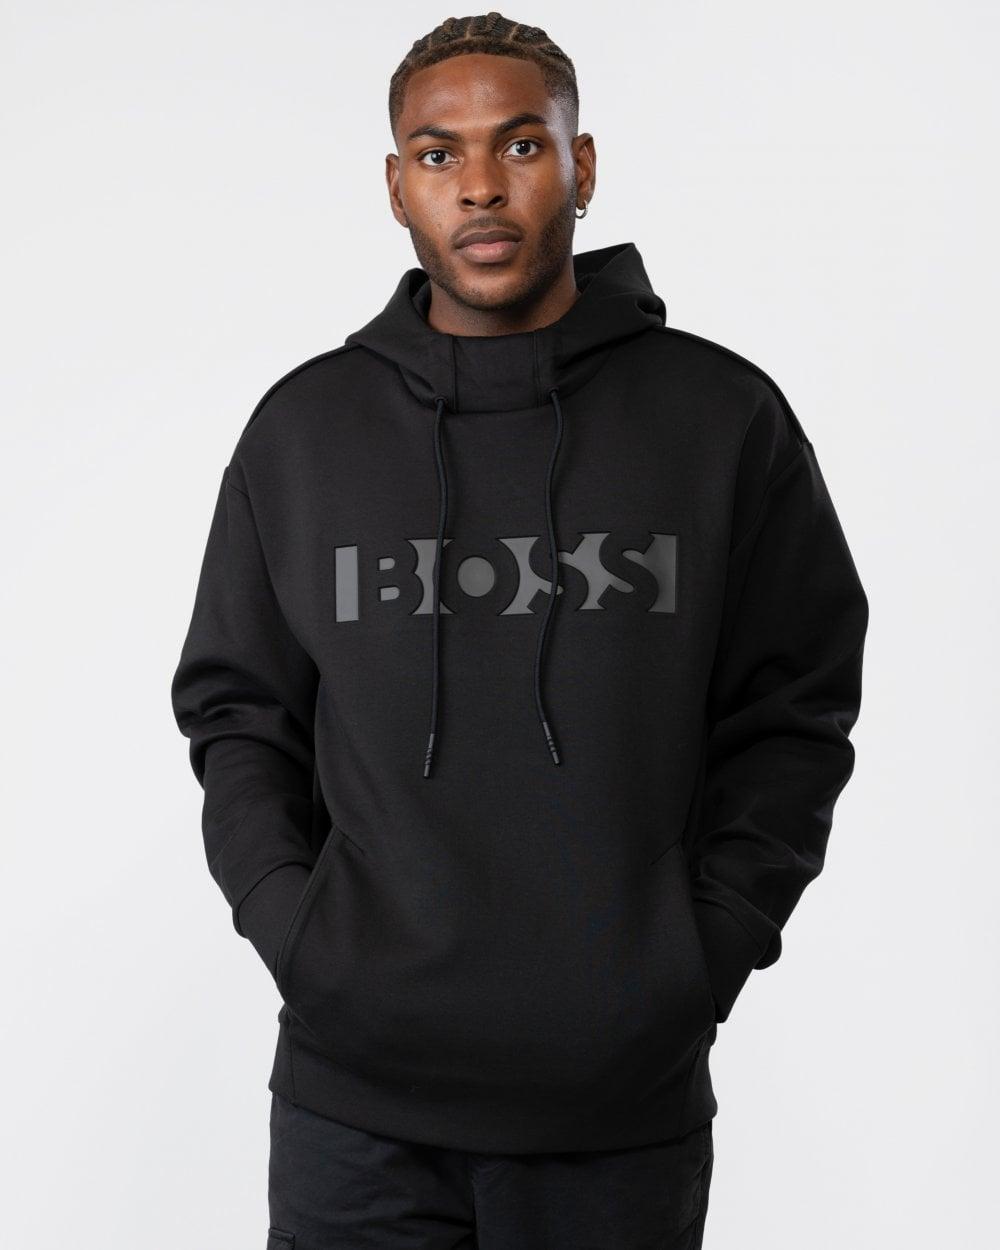 BOSS by HUGO BOSS Selway Pullover Hoodie in Black for Men | Lyst